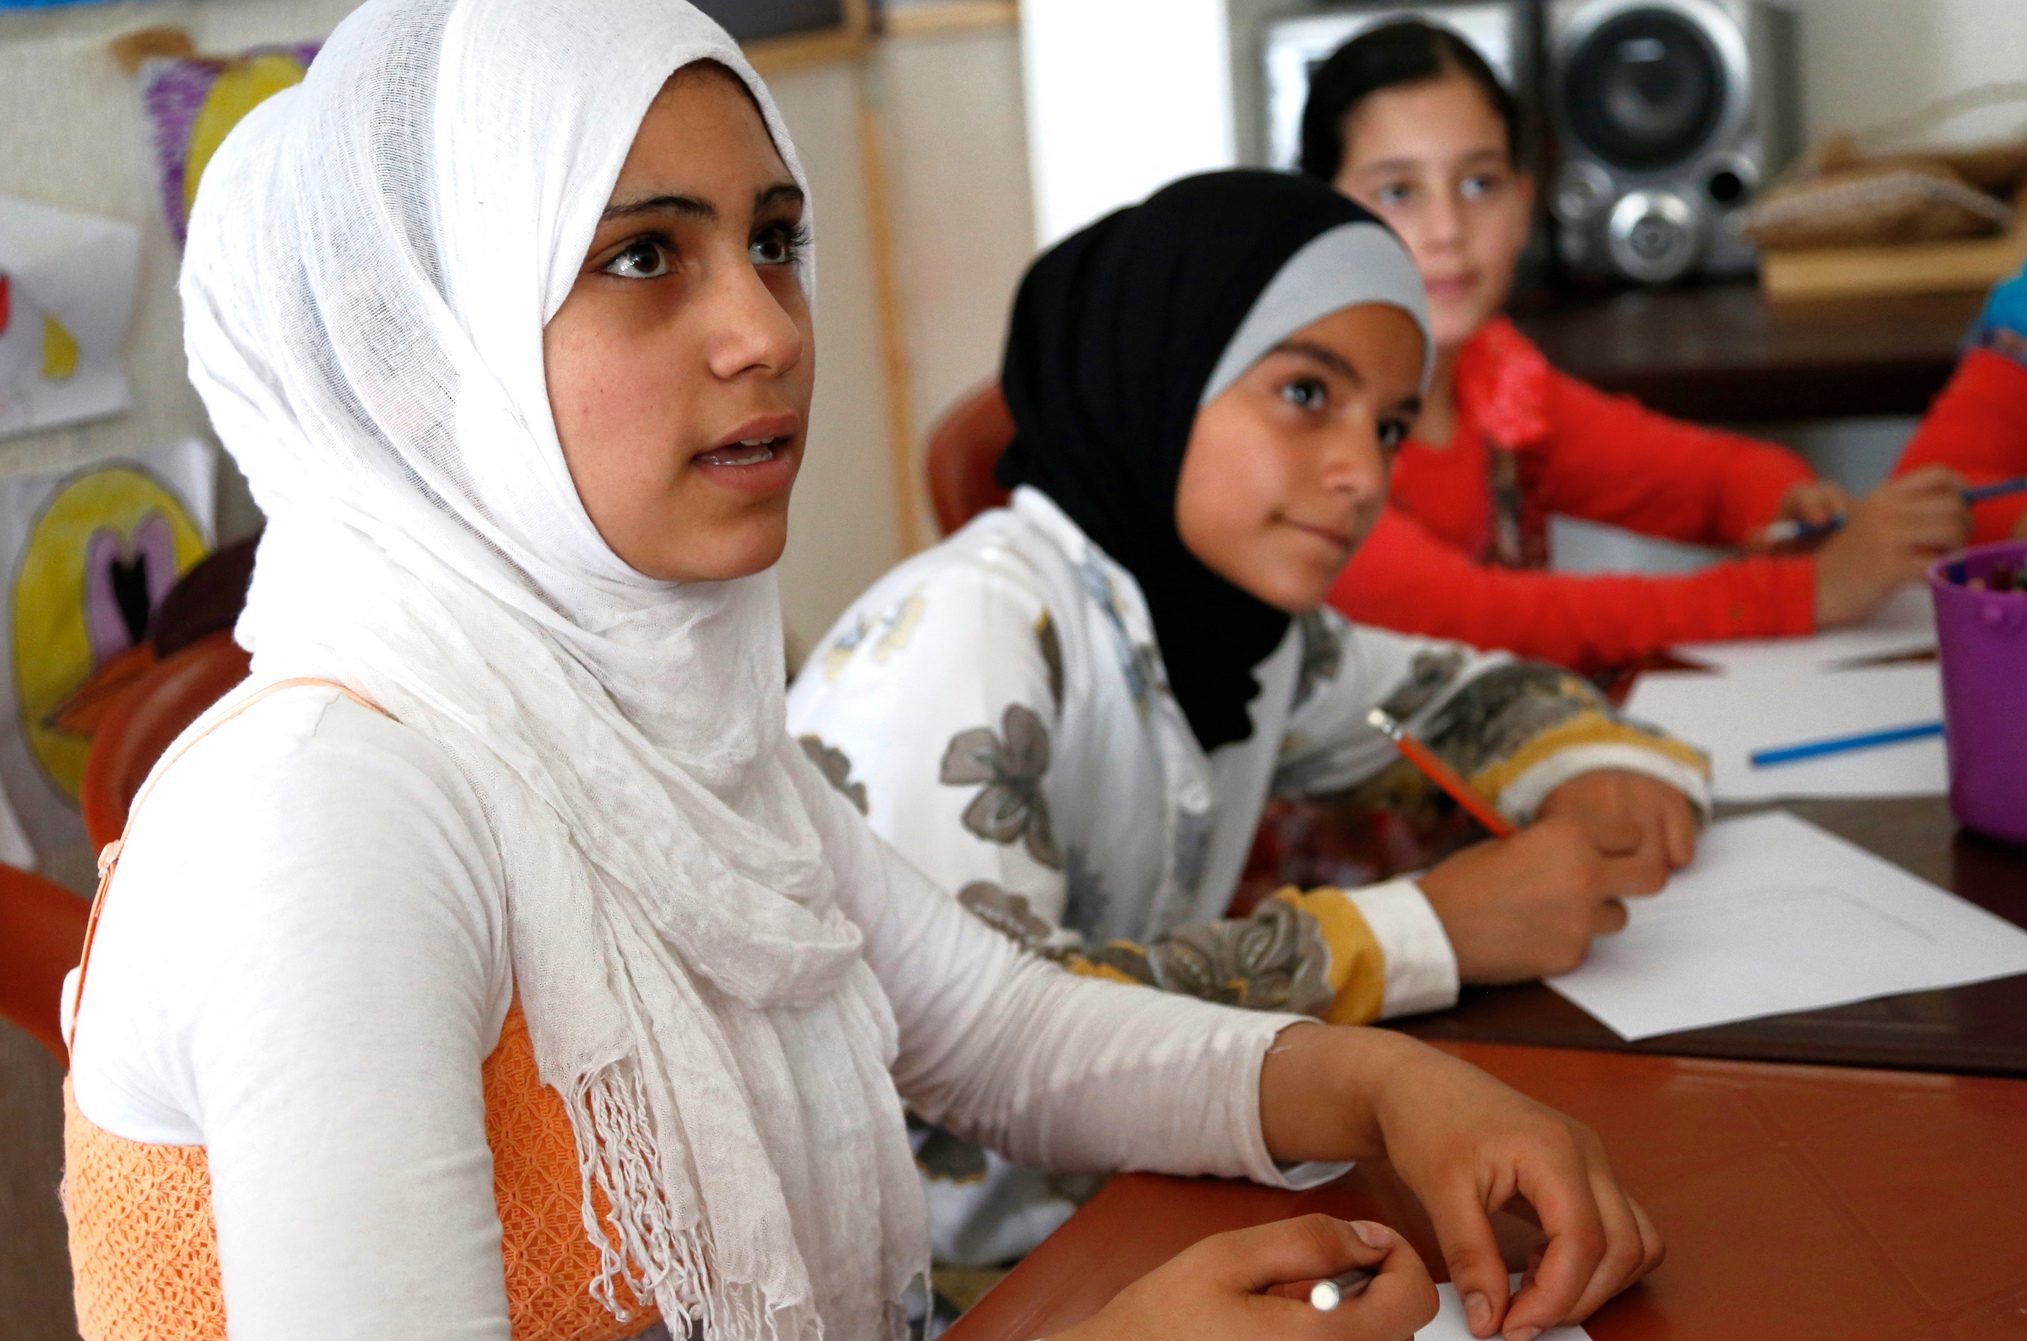 Zehntausende von Flüchtlingskindern müssen in den Schulen sprachlich und sozial integriert werden. Foto: UK Departement for Development / flickr (CC BY 2.0)